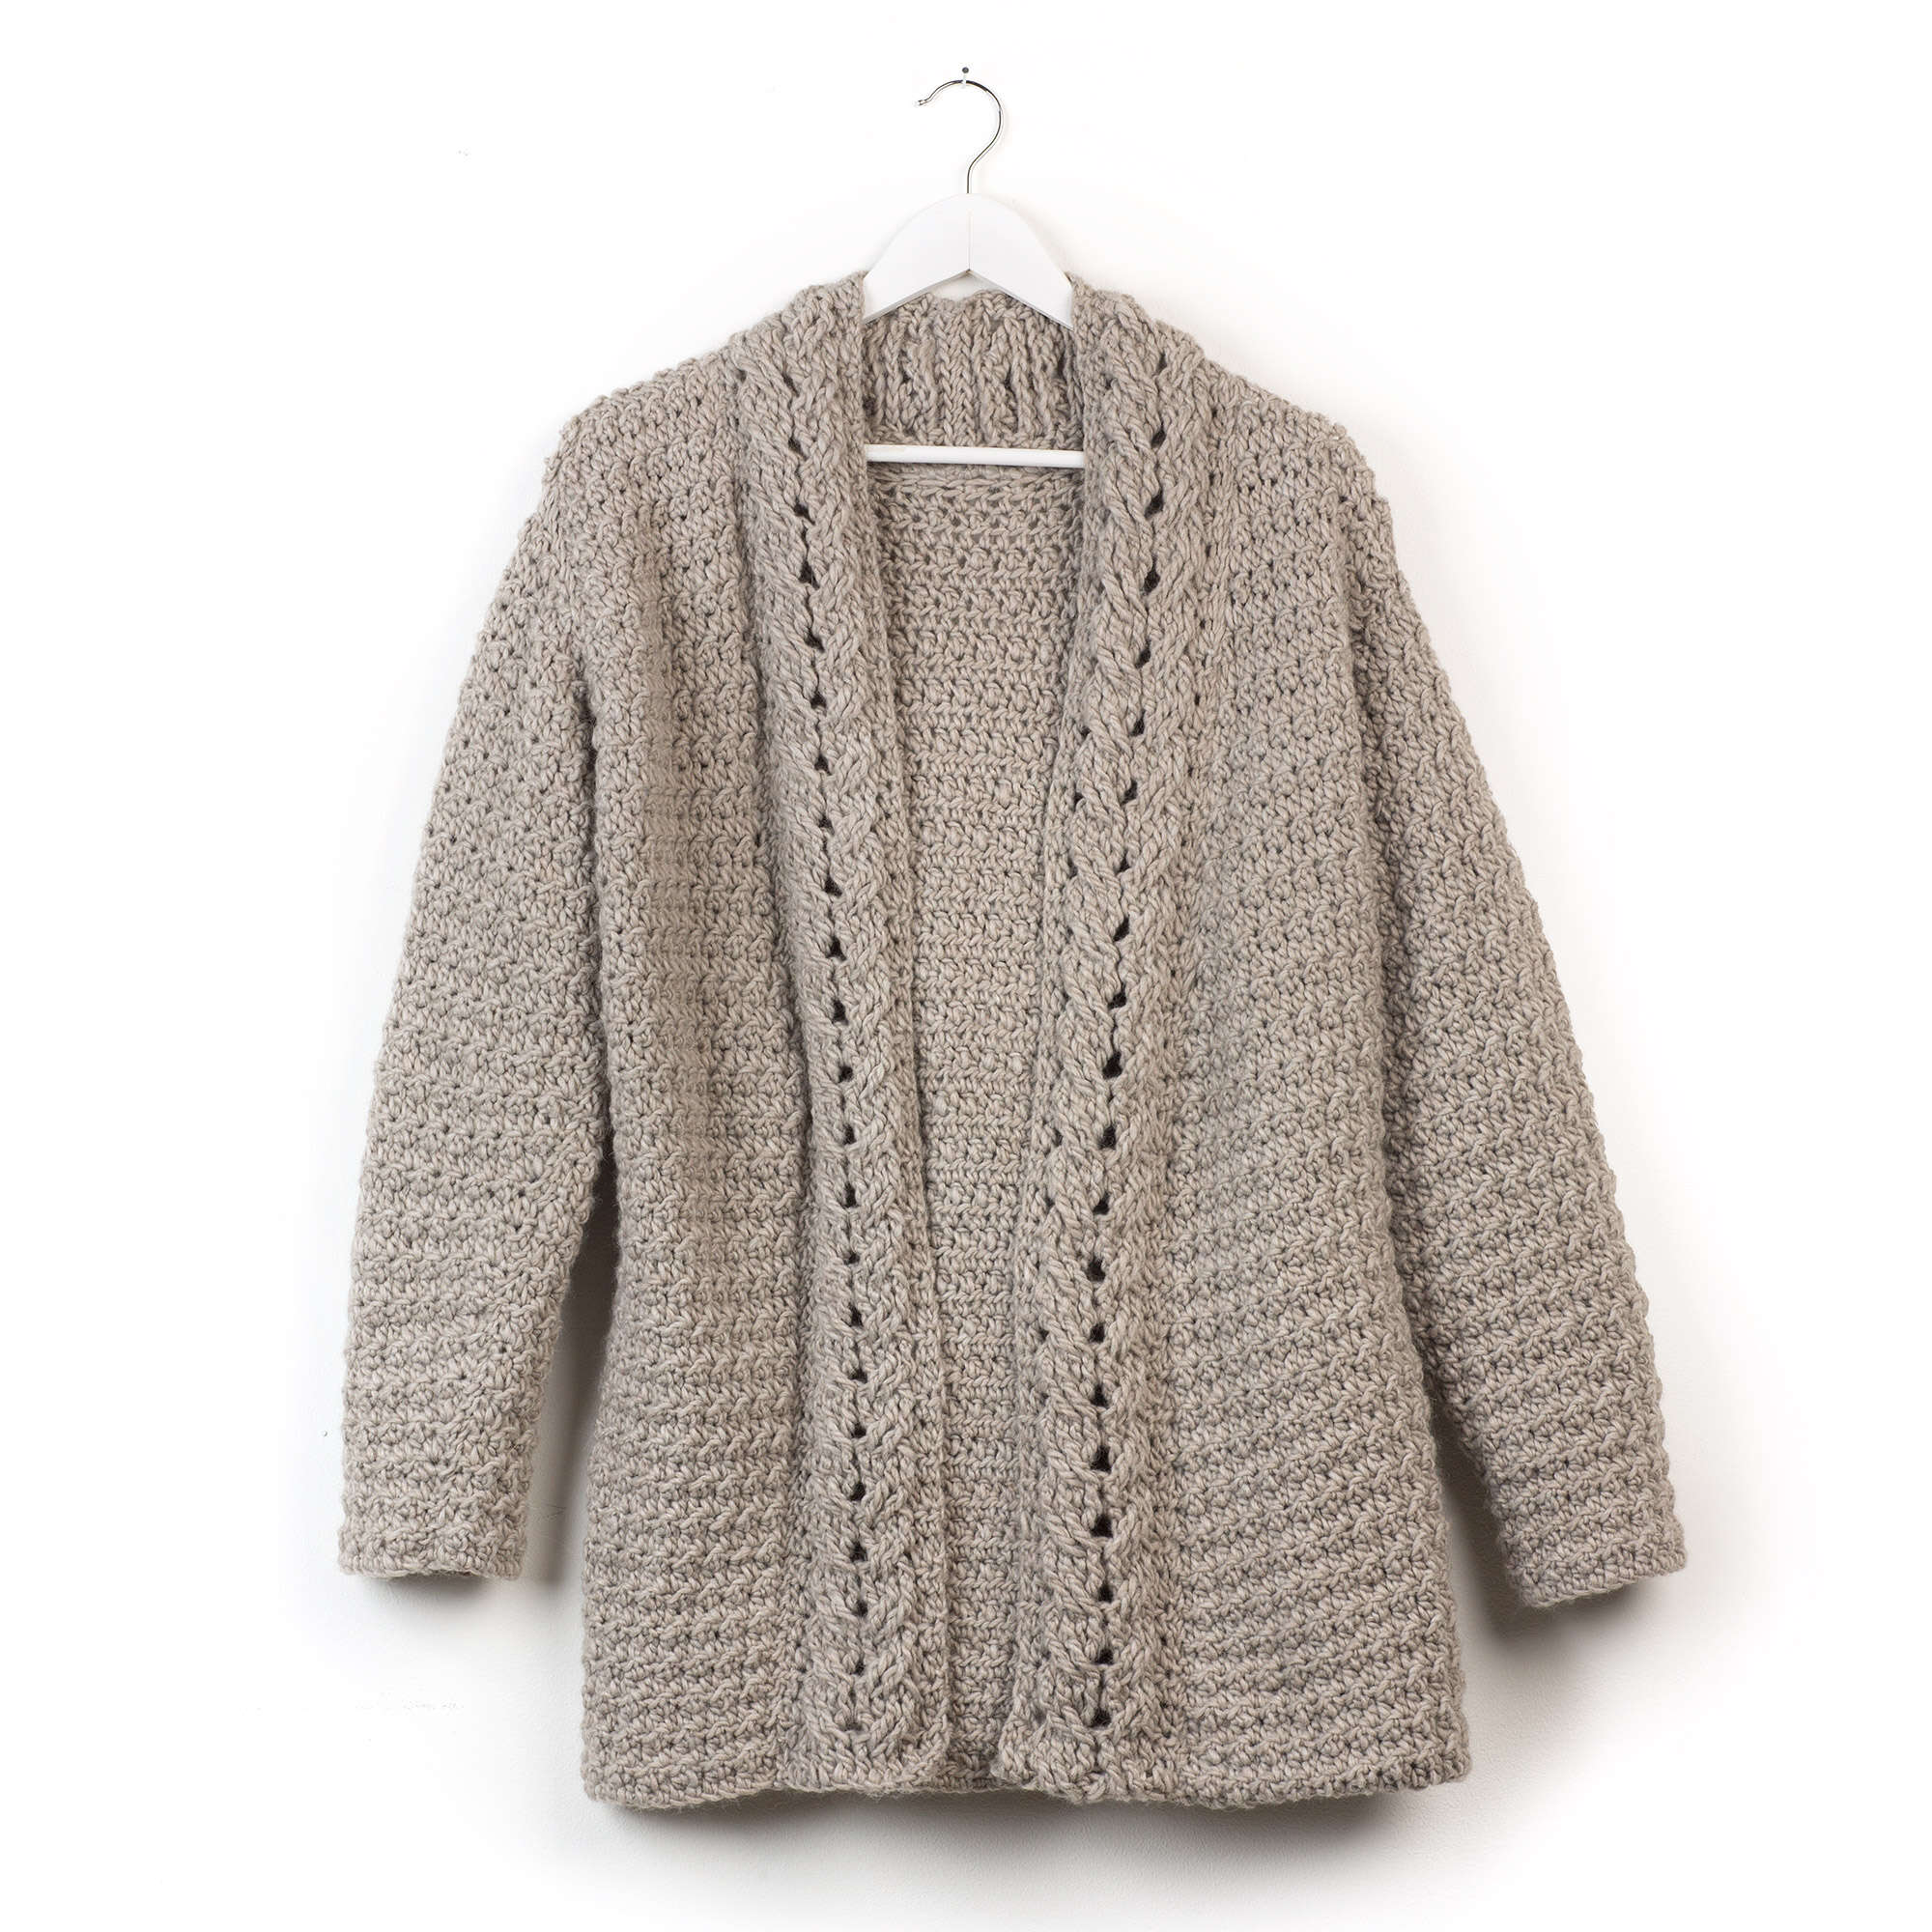 Free Patons Slouchy Crochet Cardigan Pattern | Yarnspirations